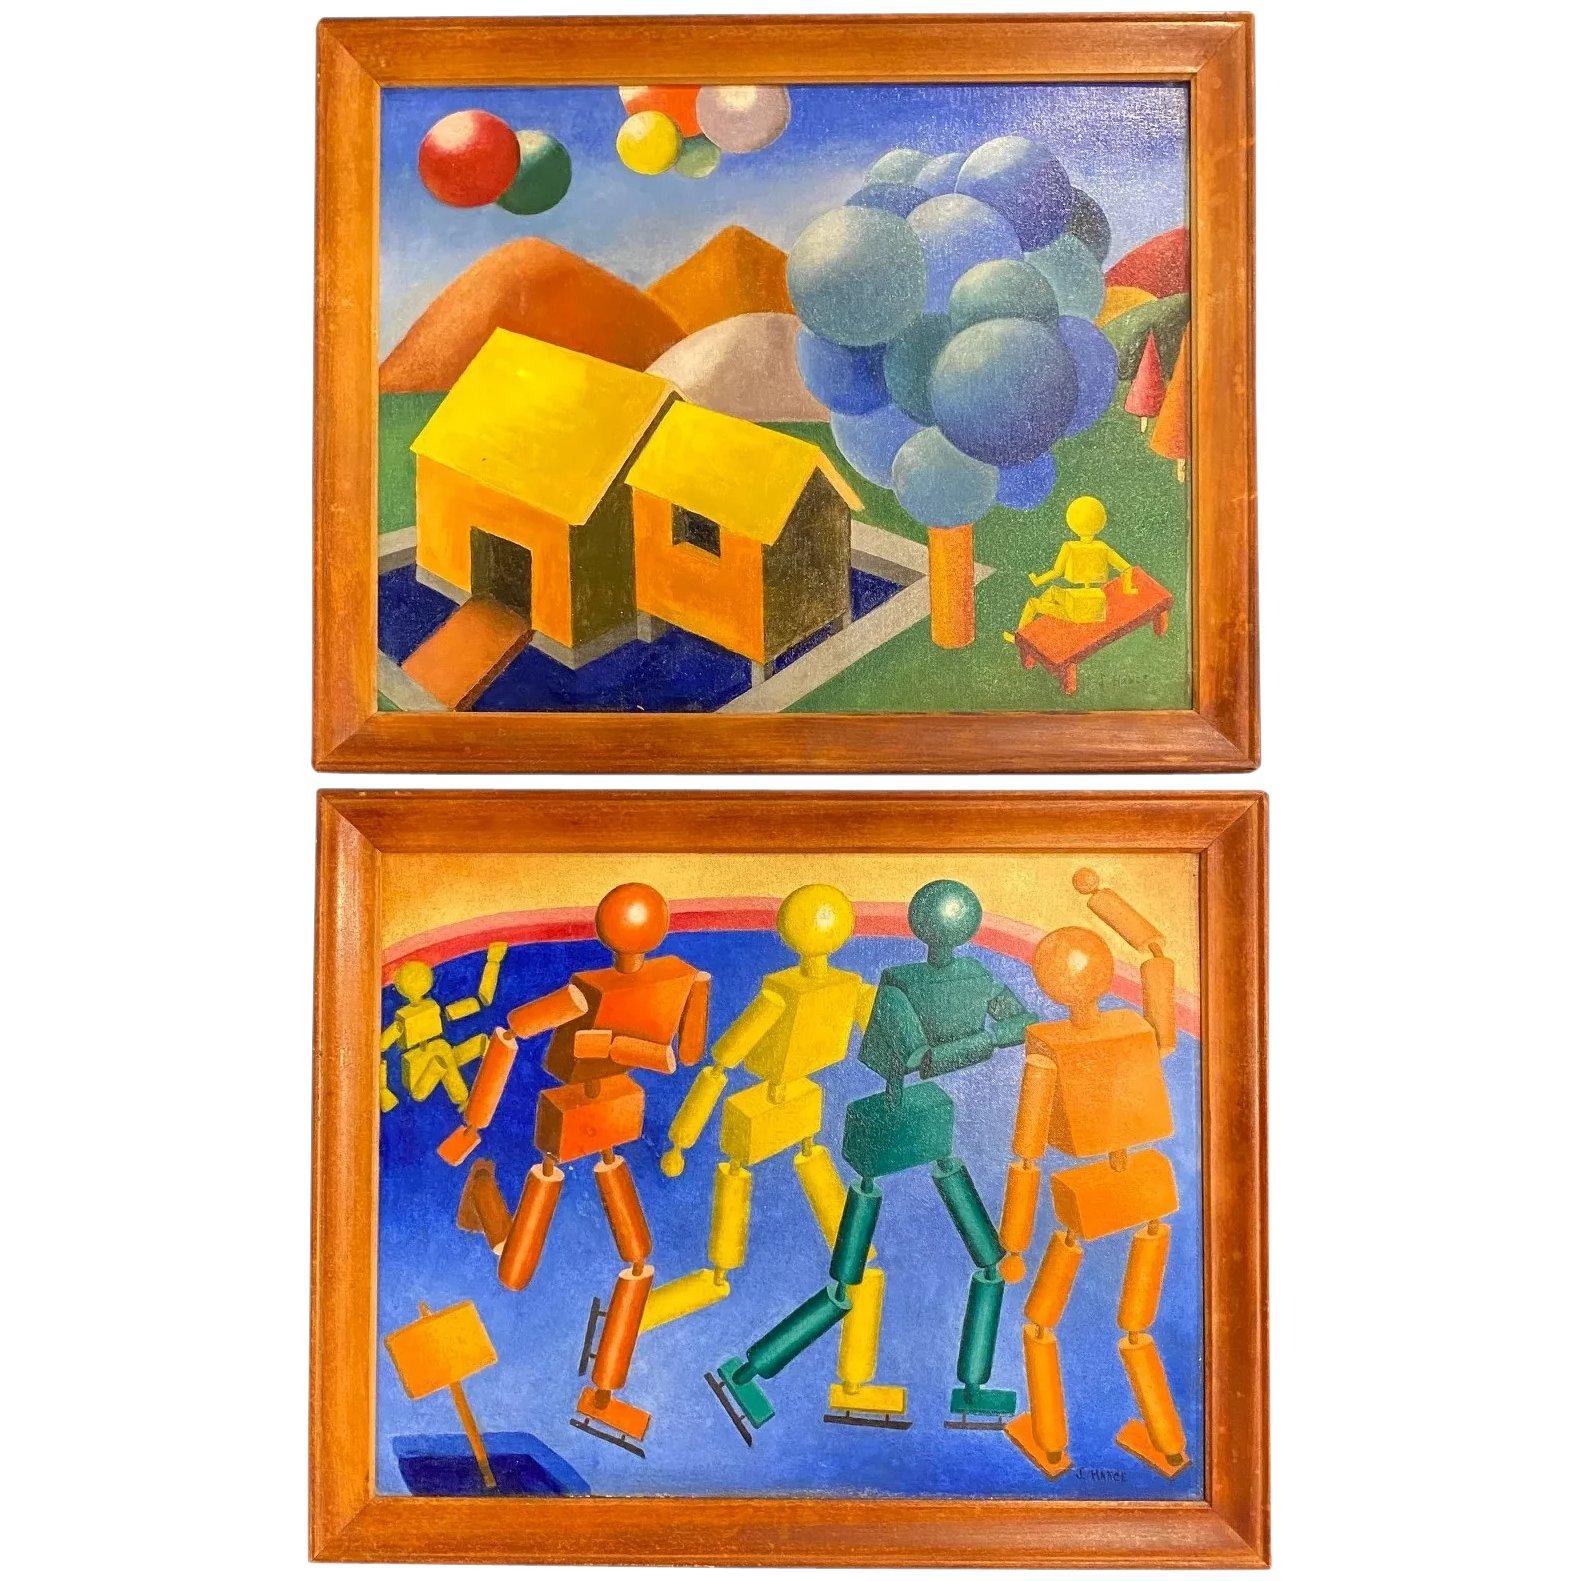 J. Hance Figurative Painting - Cubist Figures / Cubist Landscape with Balloons